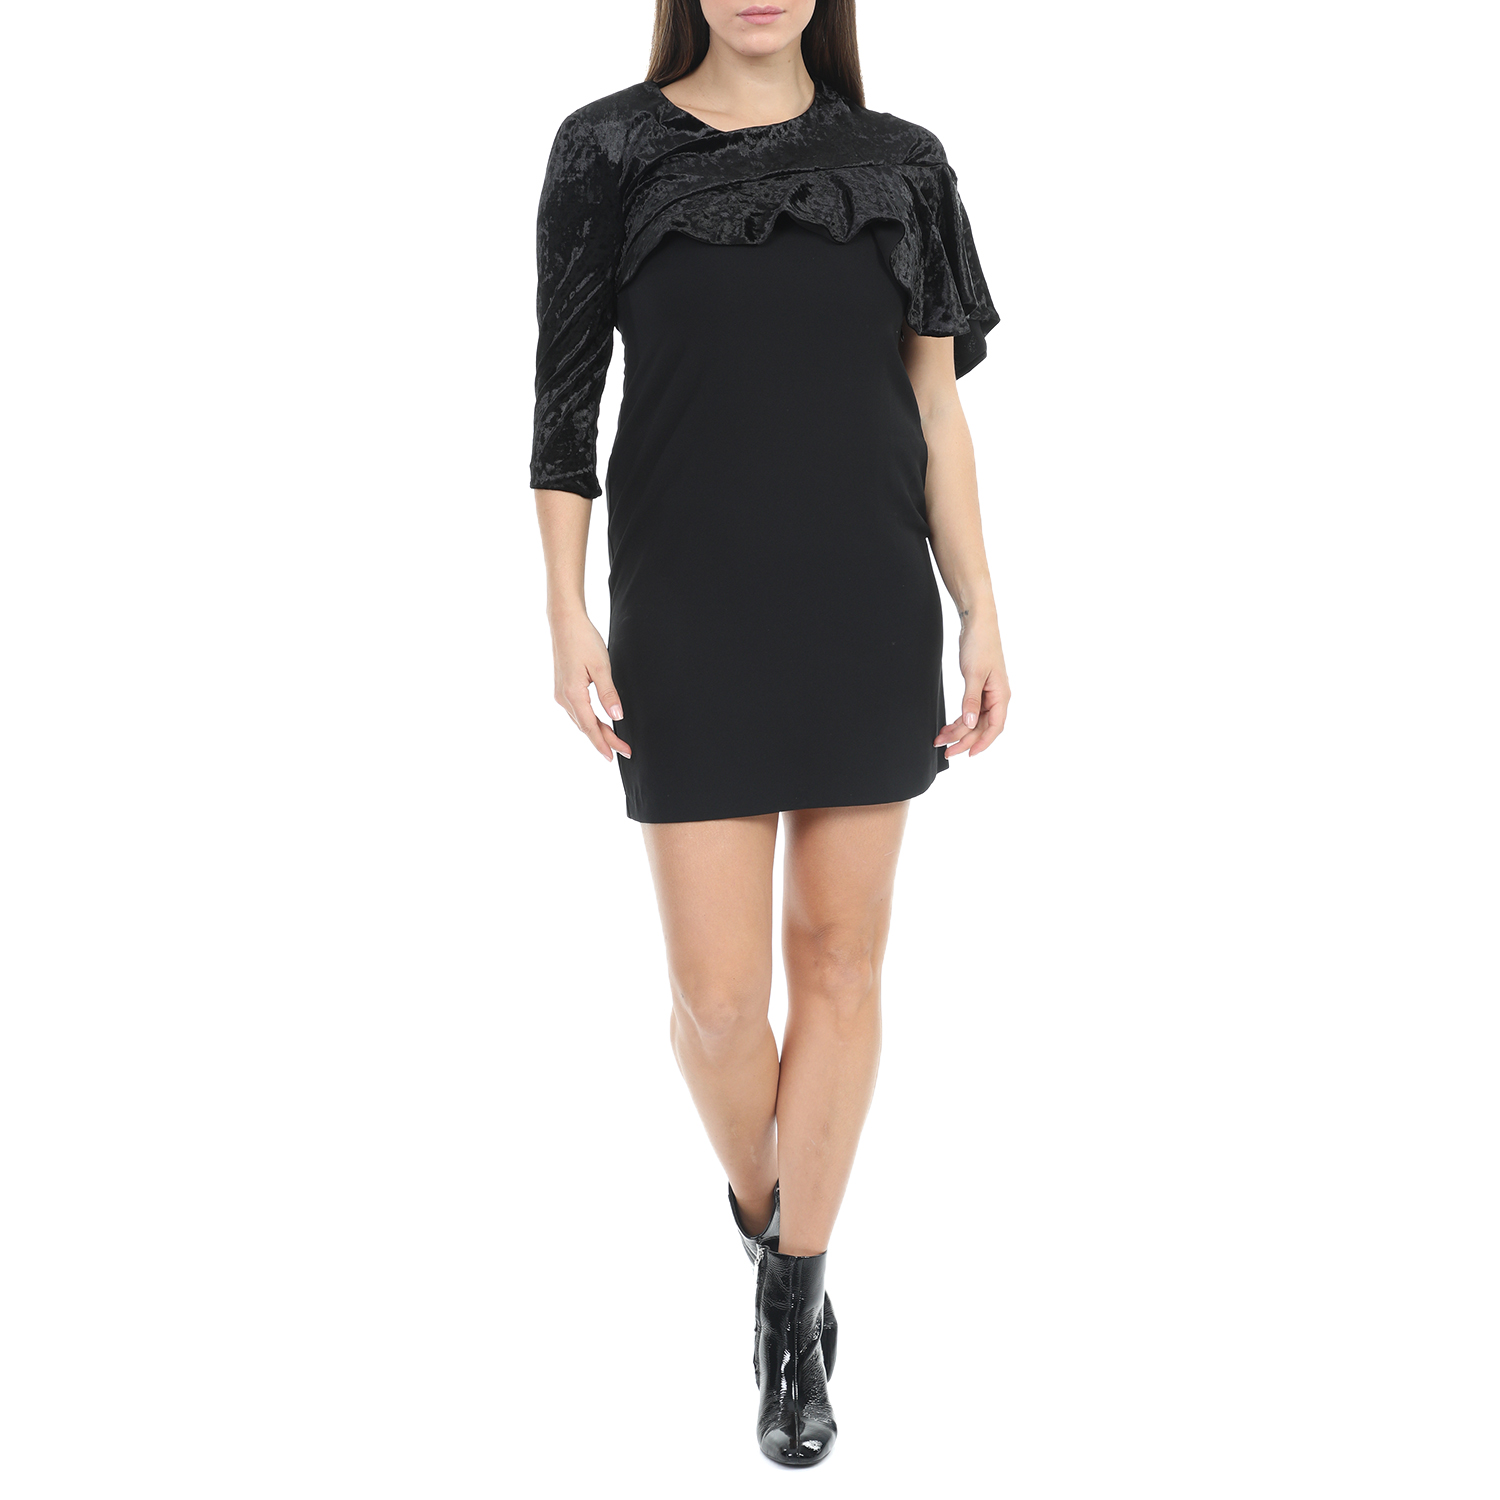 Γυναικεία/Ρούχα/Φορέματα/Μίνι ANNARITA - Γυναικείο mini φόρεμα ANNARITA μαύρο